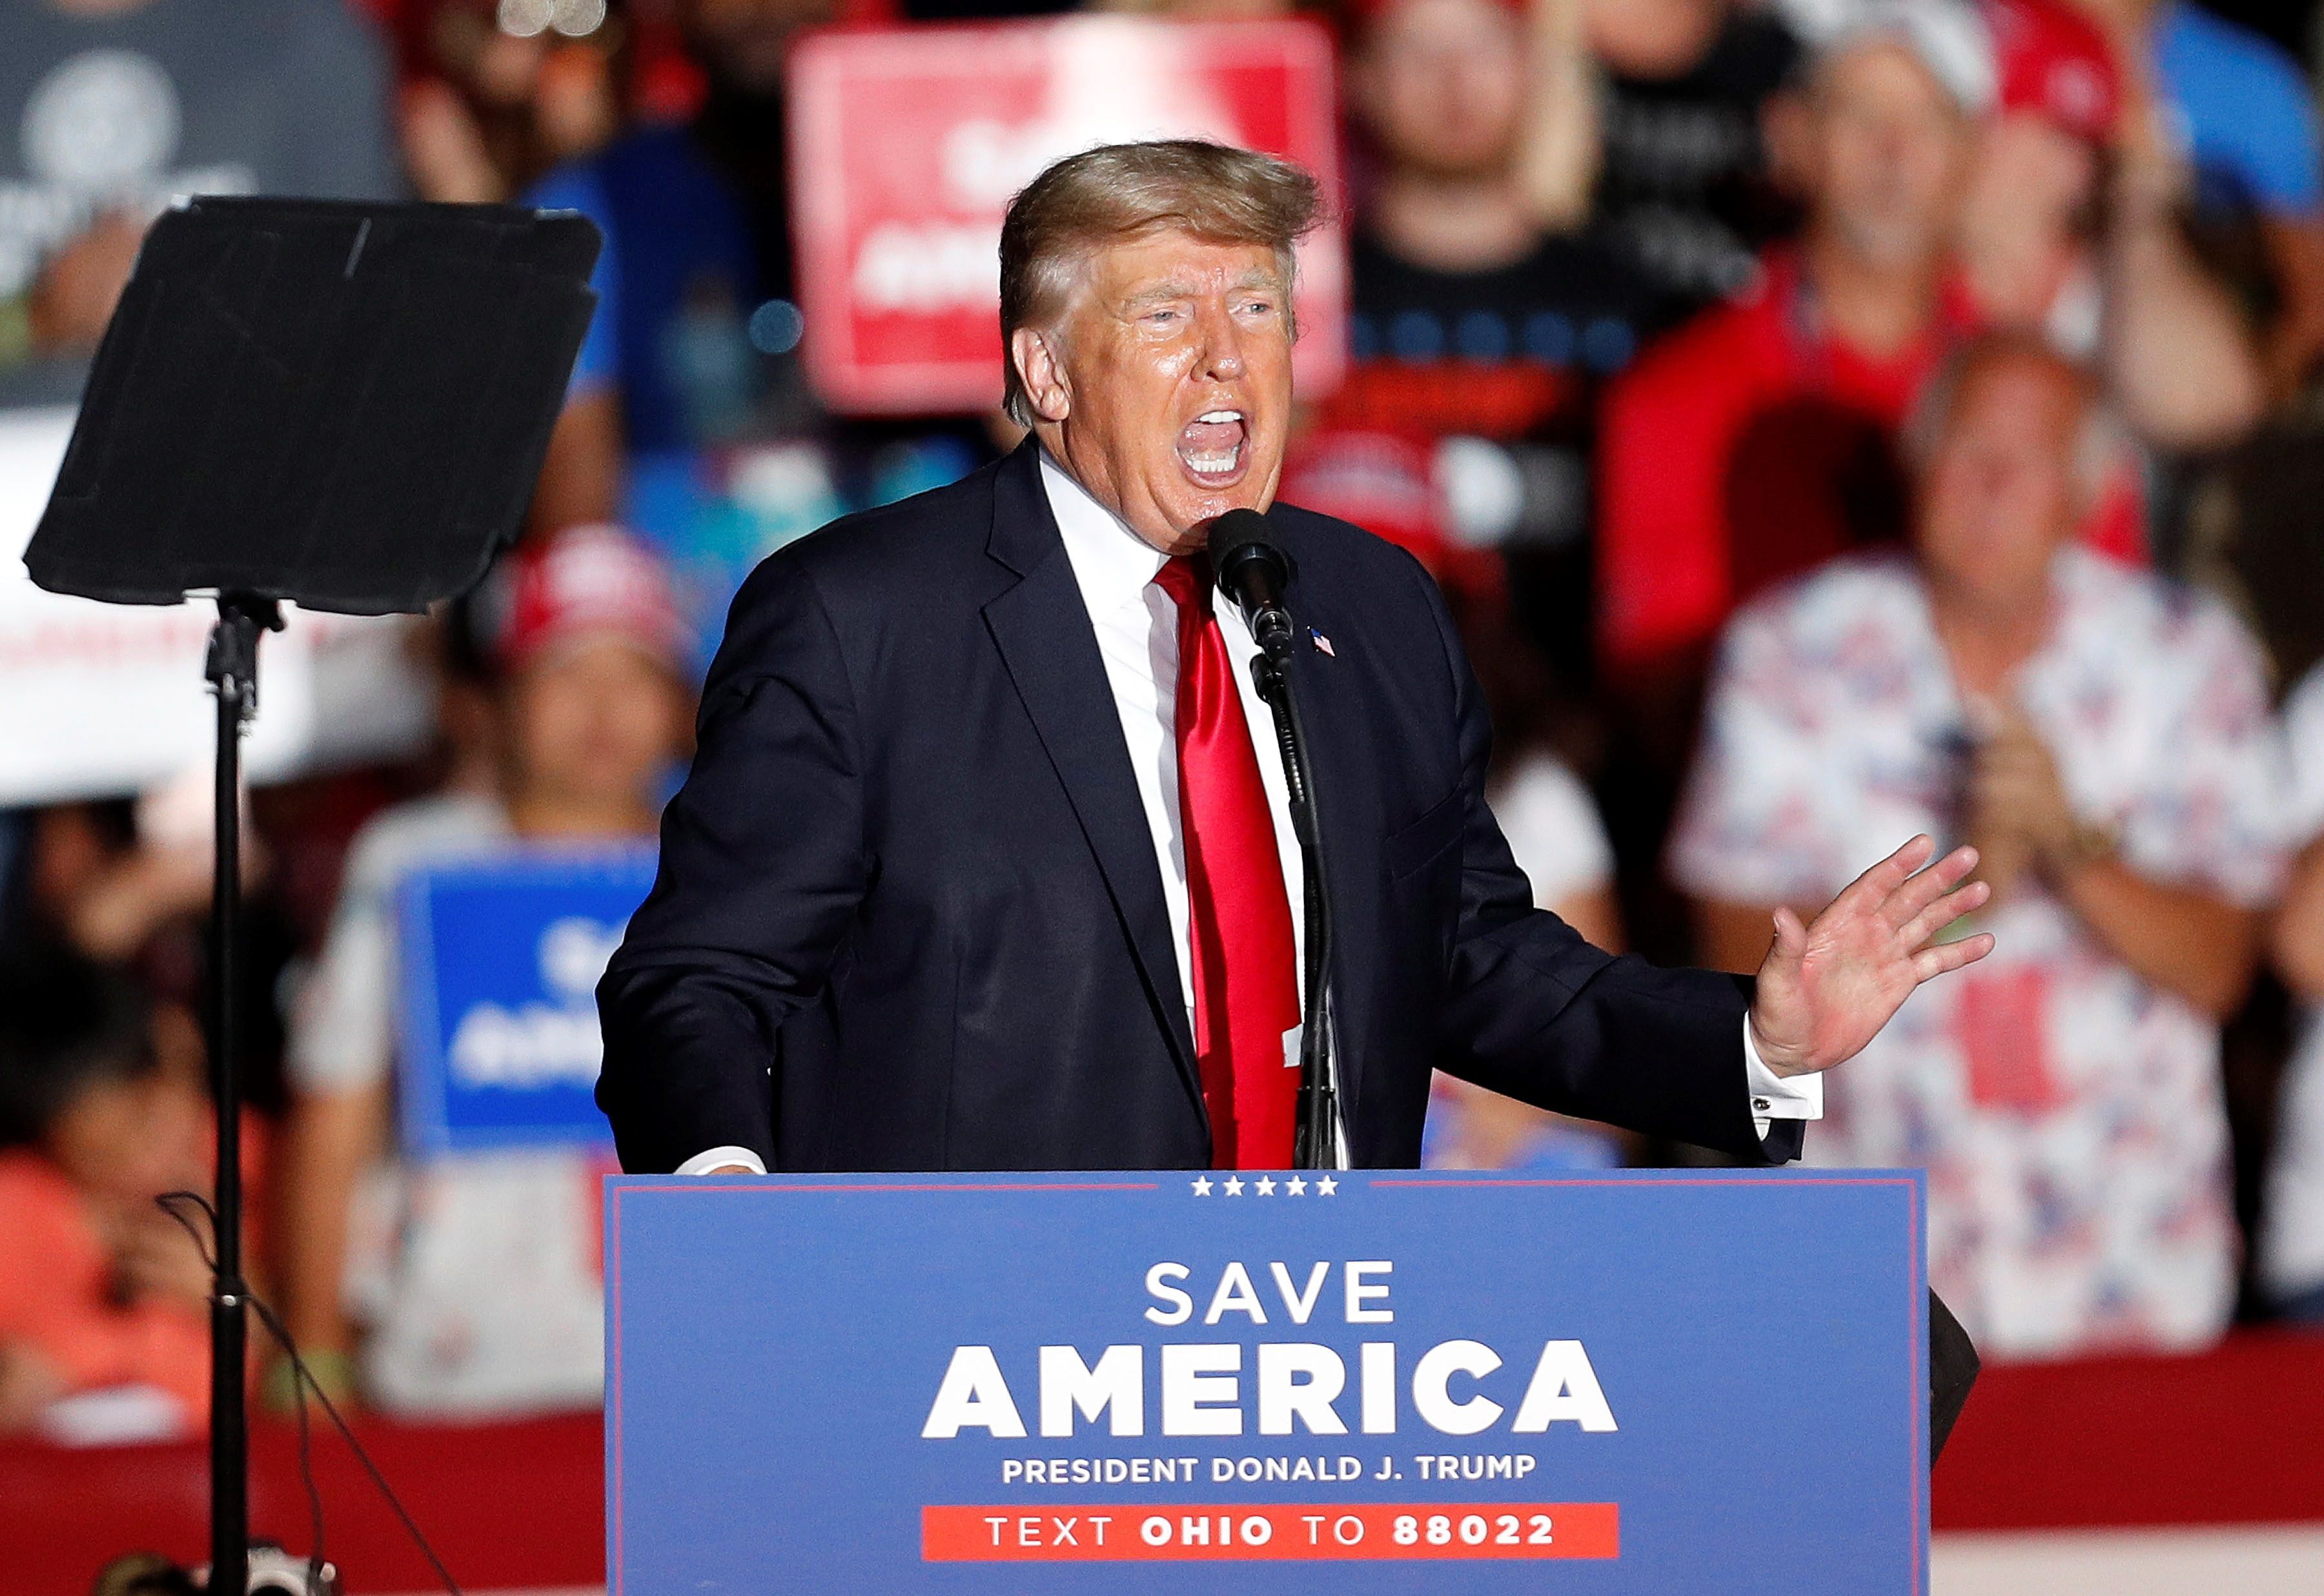 El expresidente de Estados Unidos Donald Trump (2017-2021), se dirige a los simpatizantes durante una manifestación en el recinto ferial del condado de Lorain en Wellington, Ohio, EE. UU., EFE / EPA / DAVID MAXWELL 